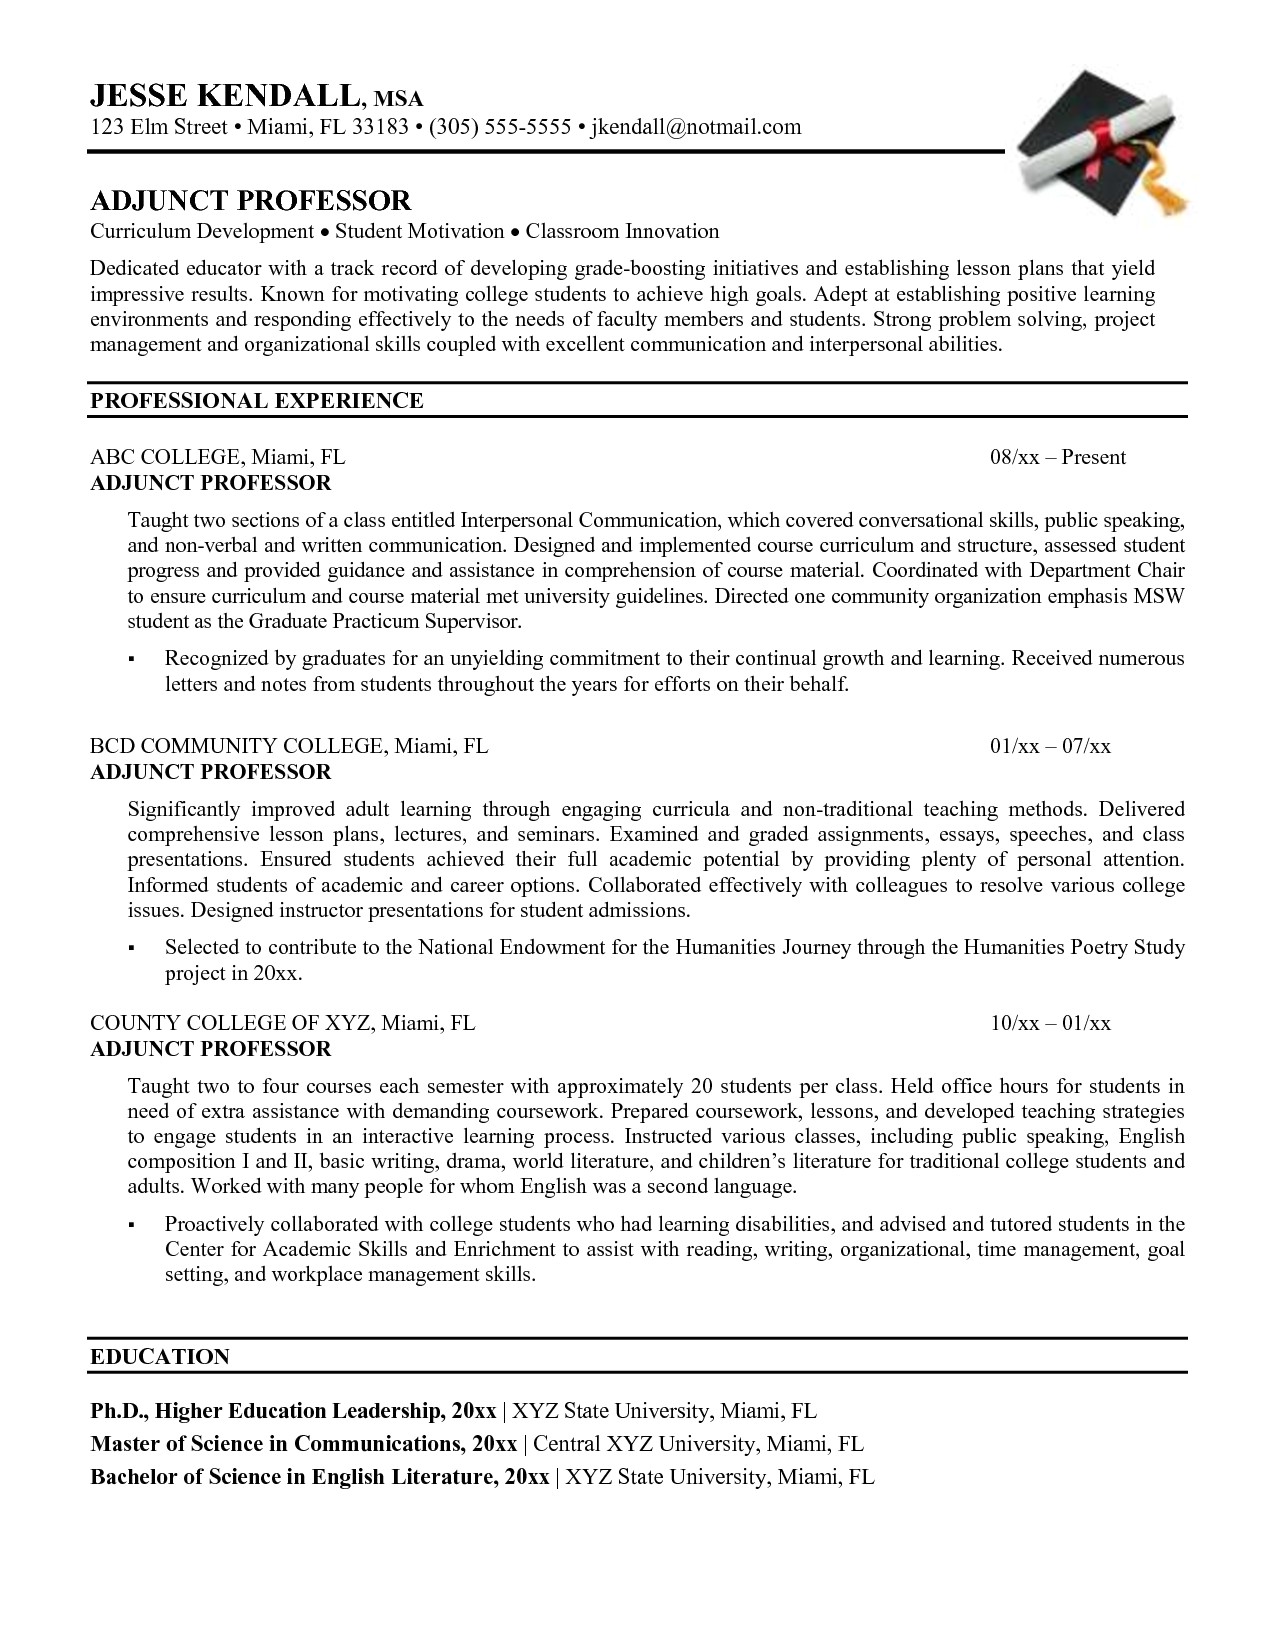 resume for adjunct teaching position